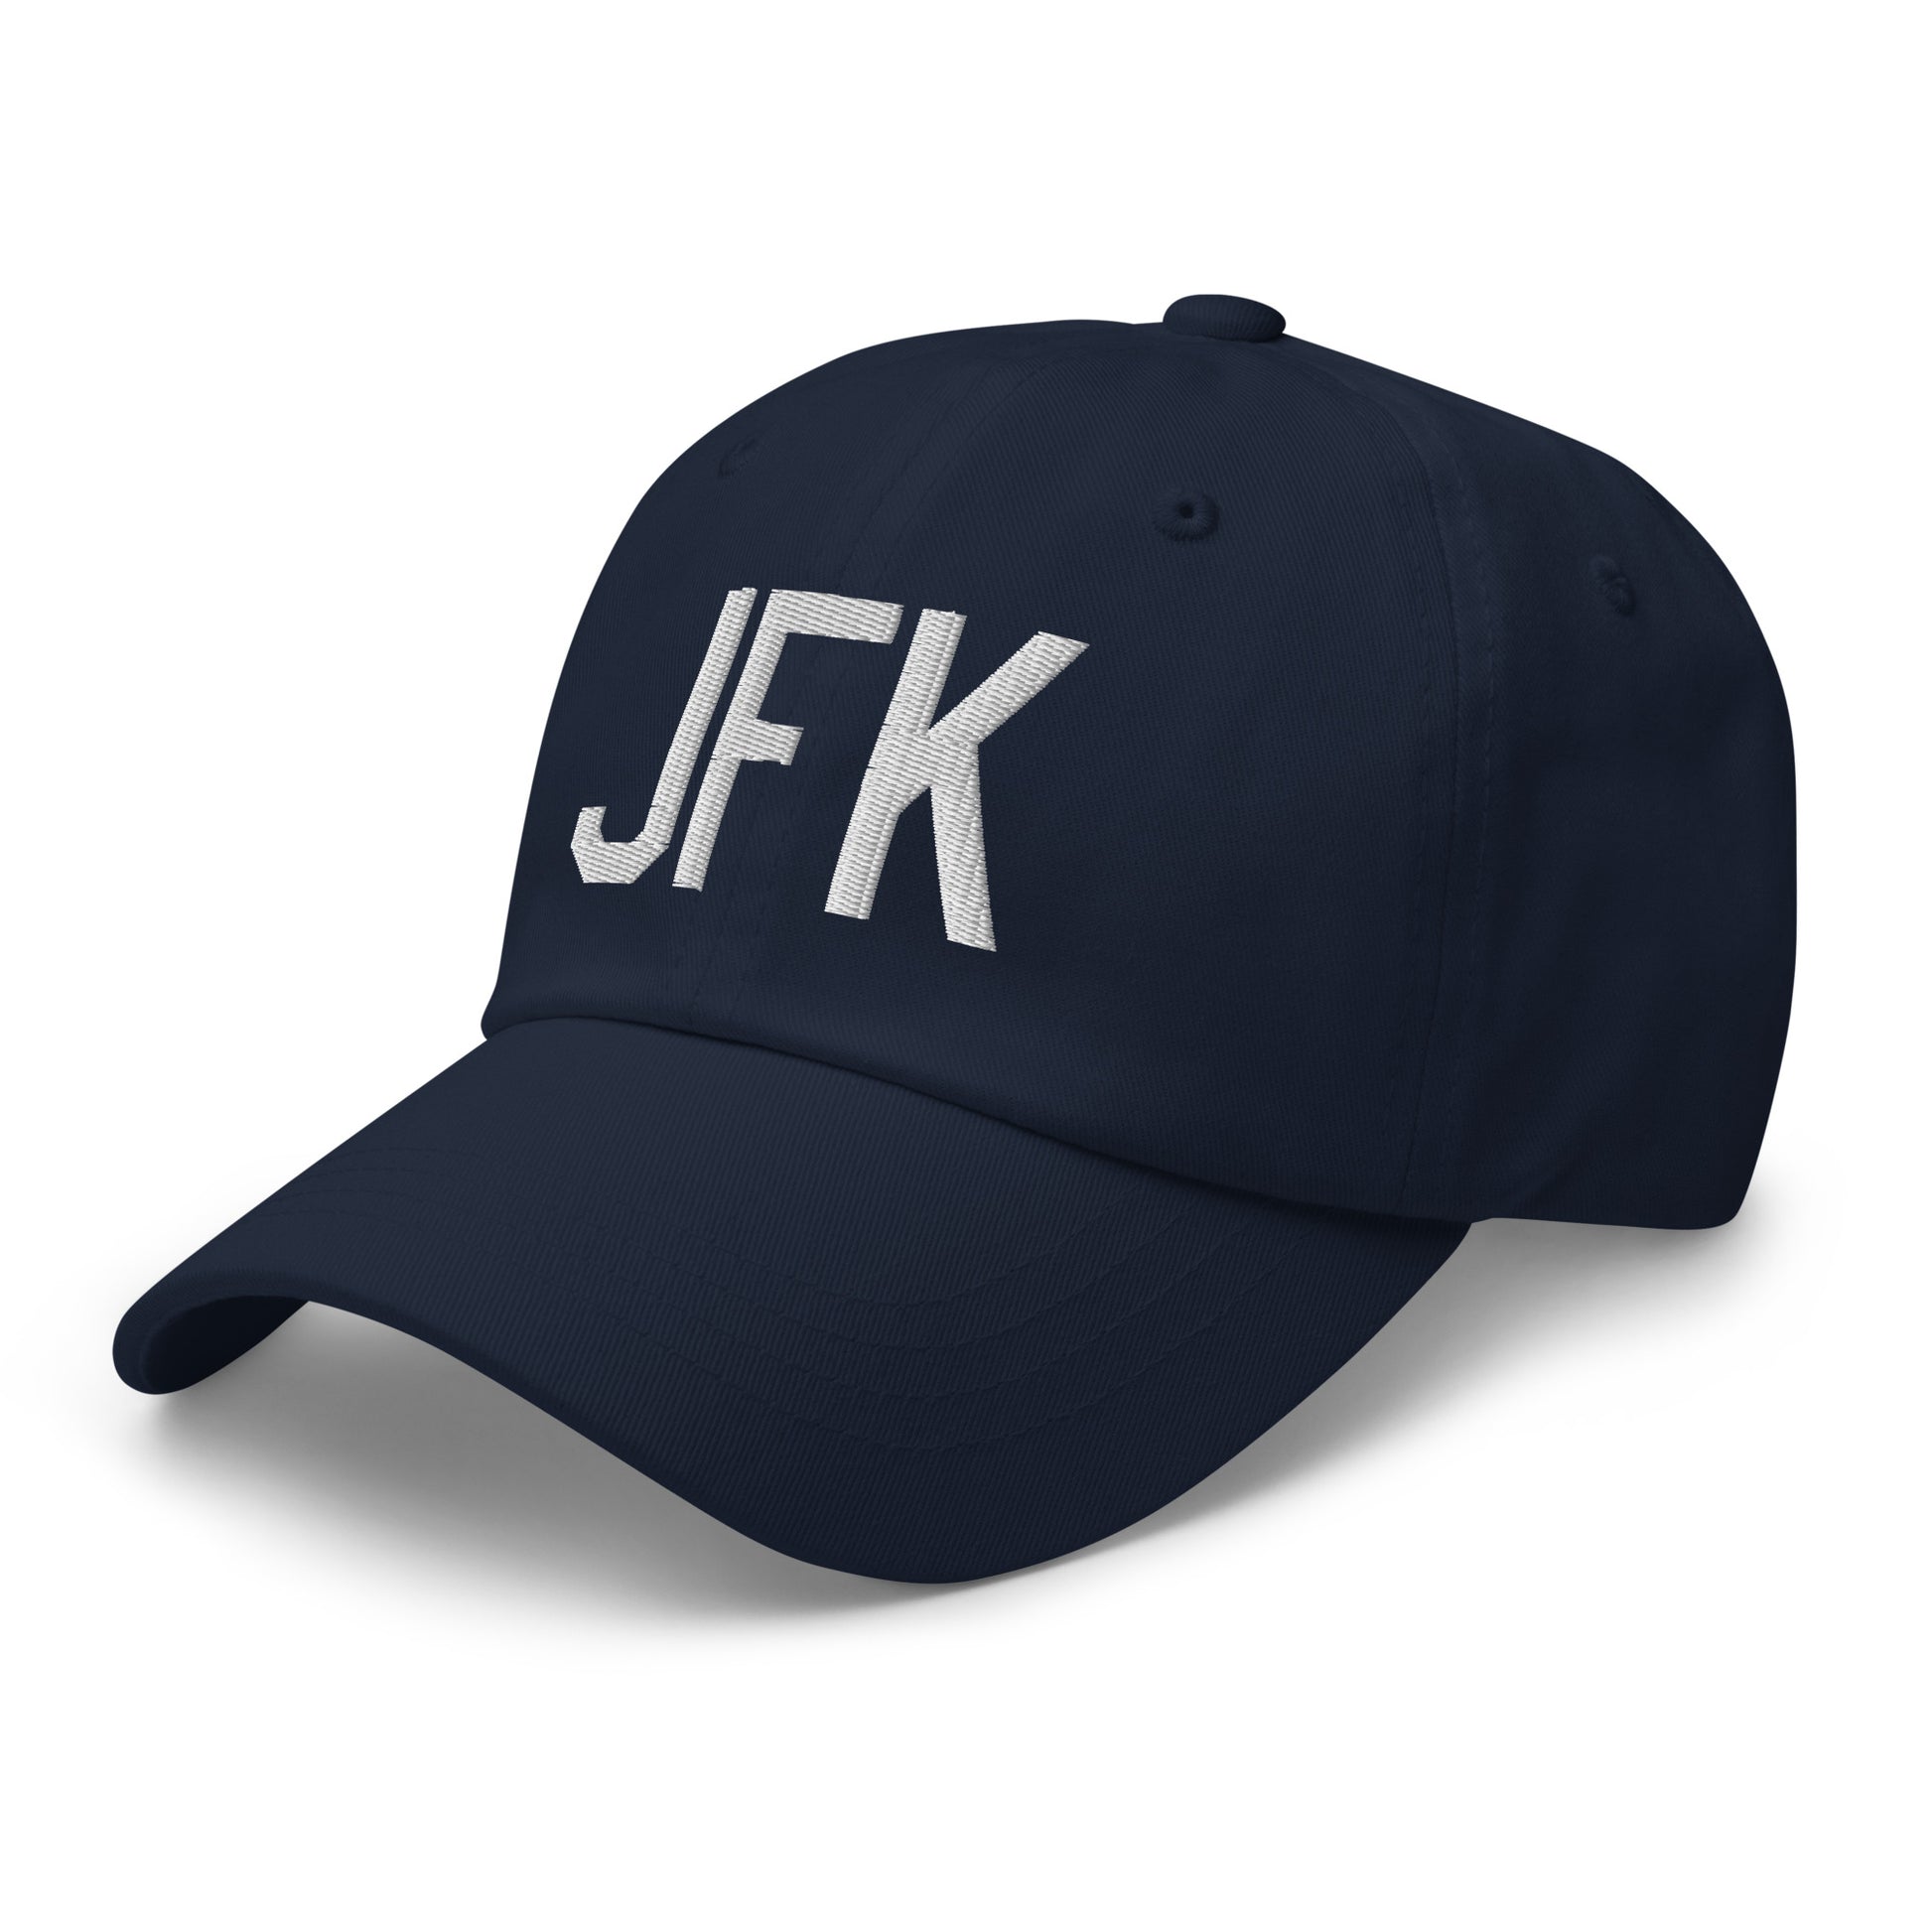 Airport Code Baseball Cap - White • JFK New York City • YHM Designs - Image 18